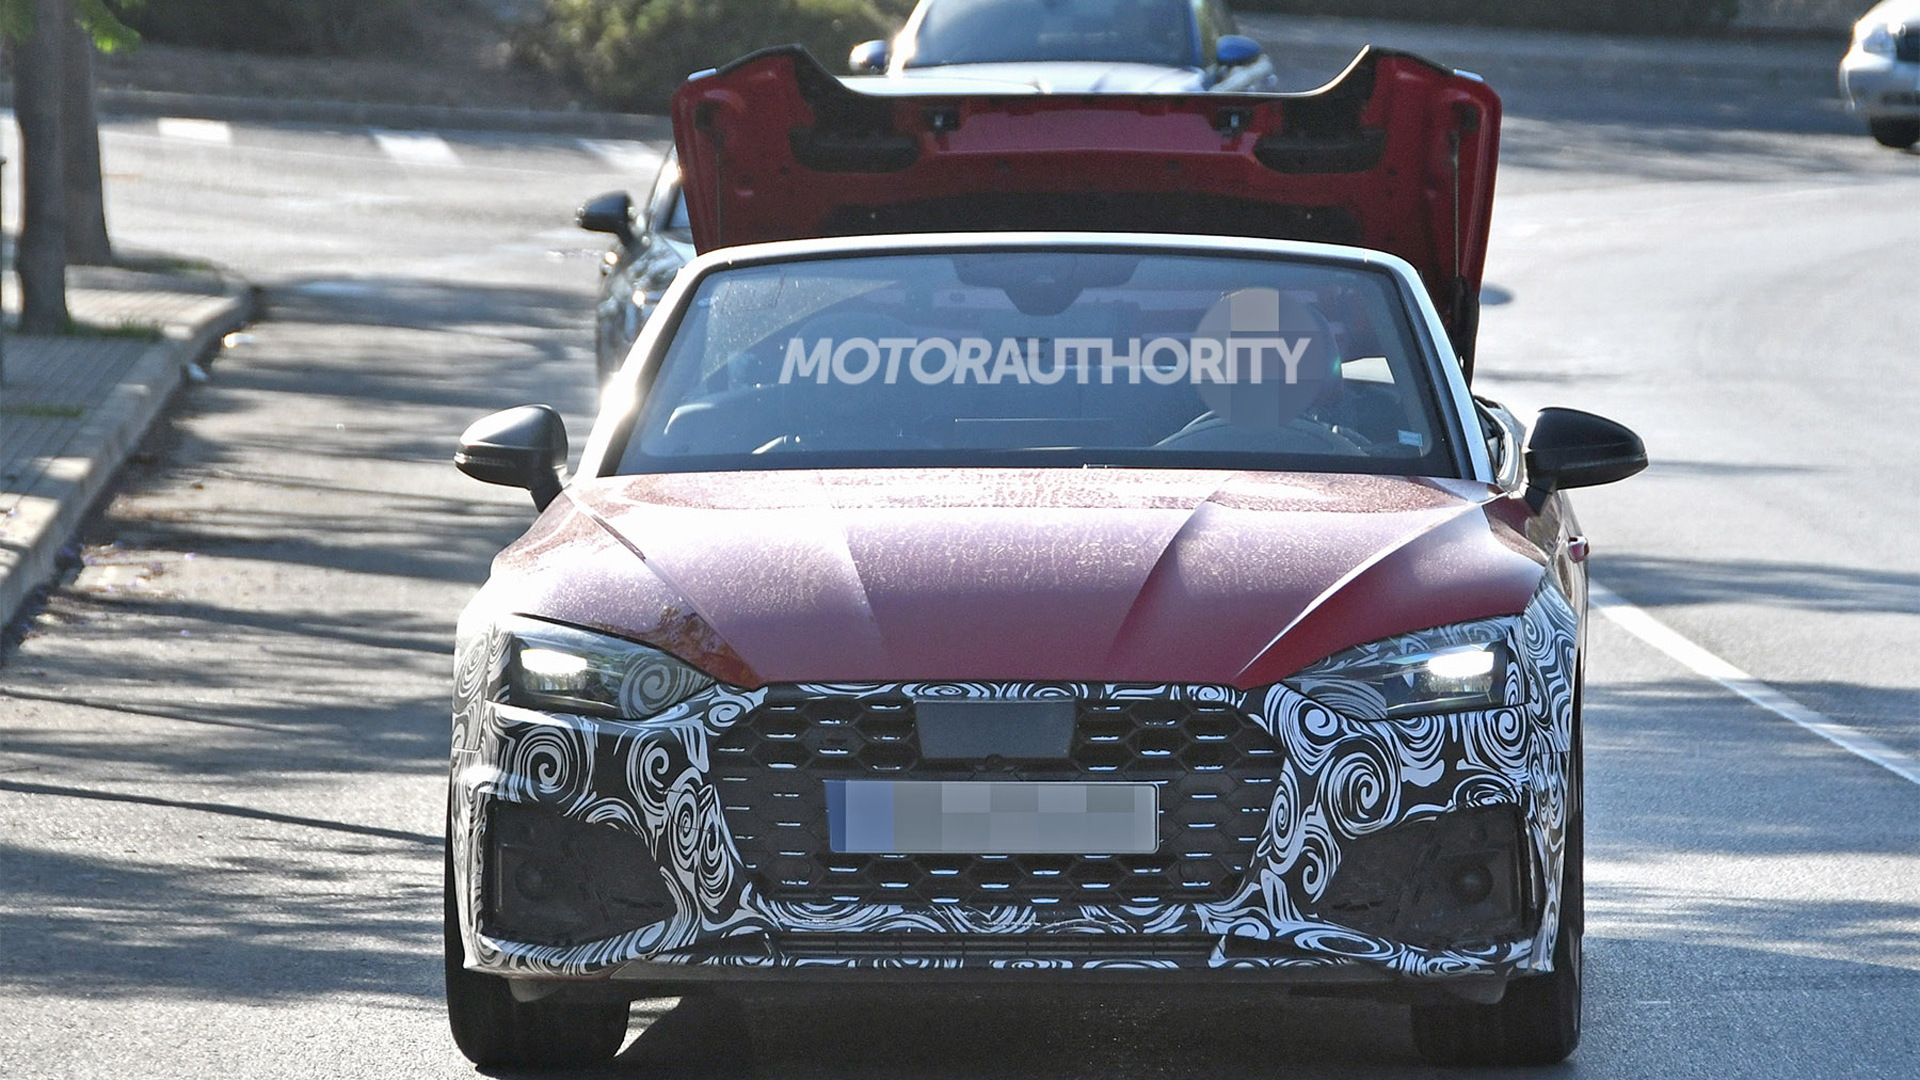 2021 Audi S5 Cabriolet facelift spy shots - Image via S. Baldauf/SB-Medien